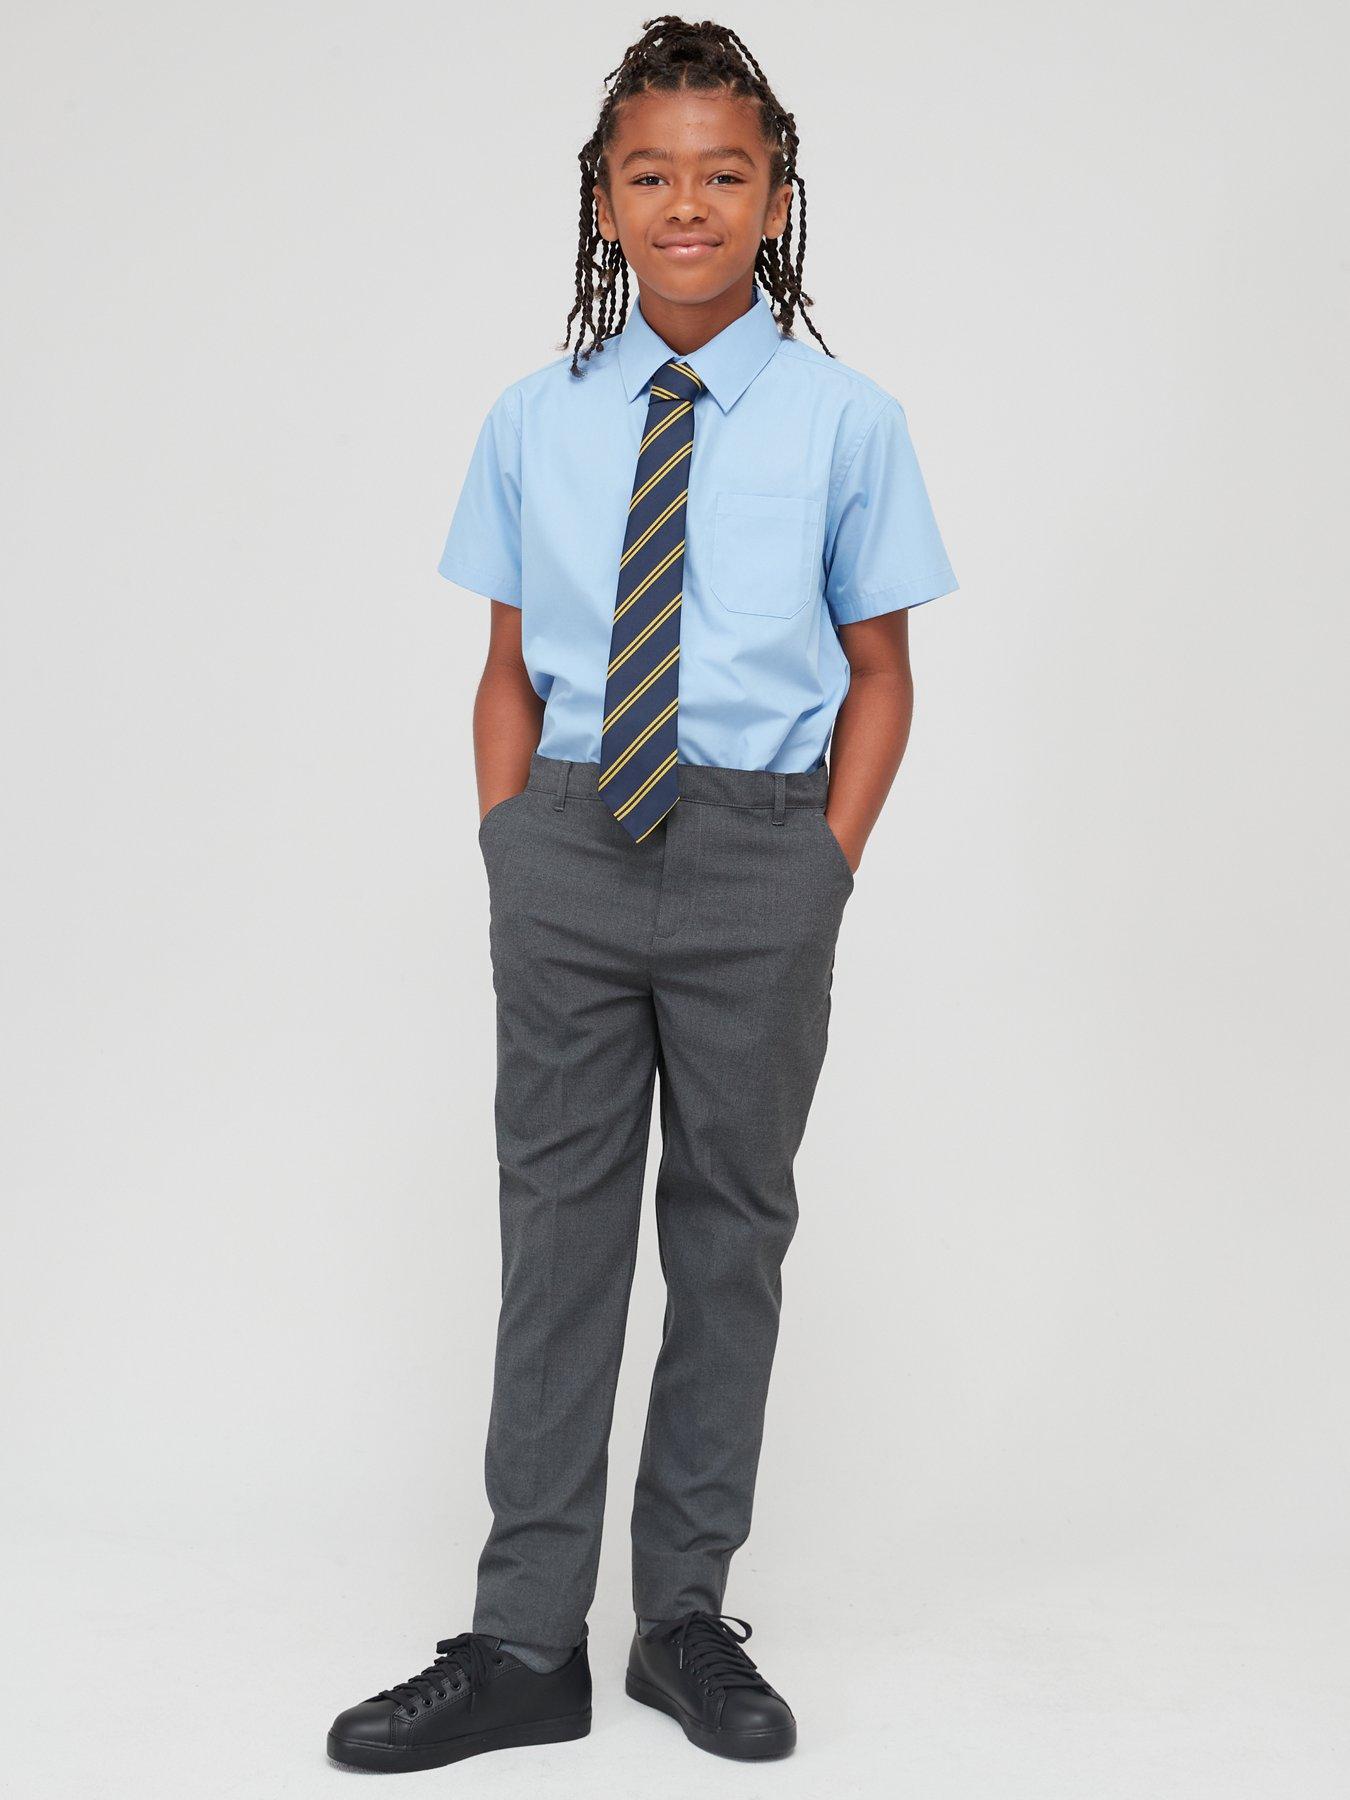 Kids Boys Girls School Uniform Suit Coat Shirt Tie Pants/Skirt Outfit 4 pcs  Set | eBay